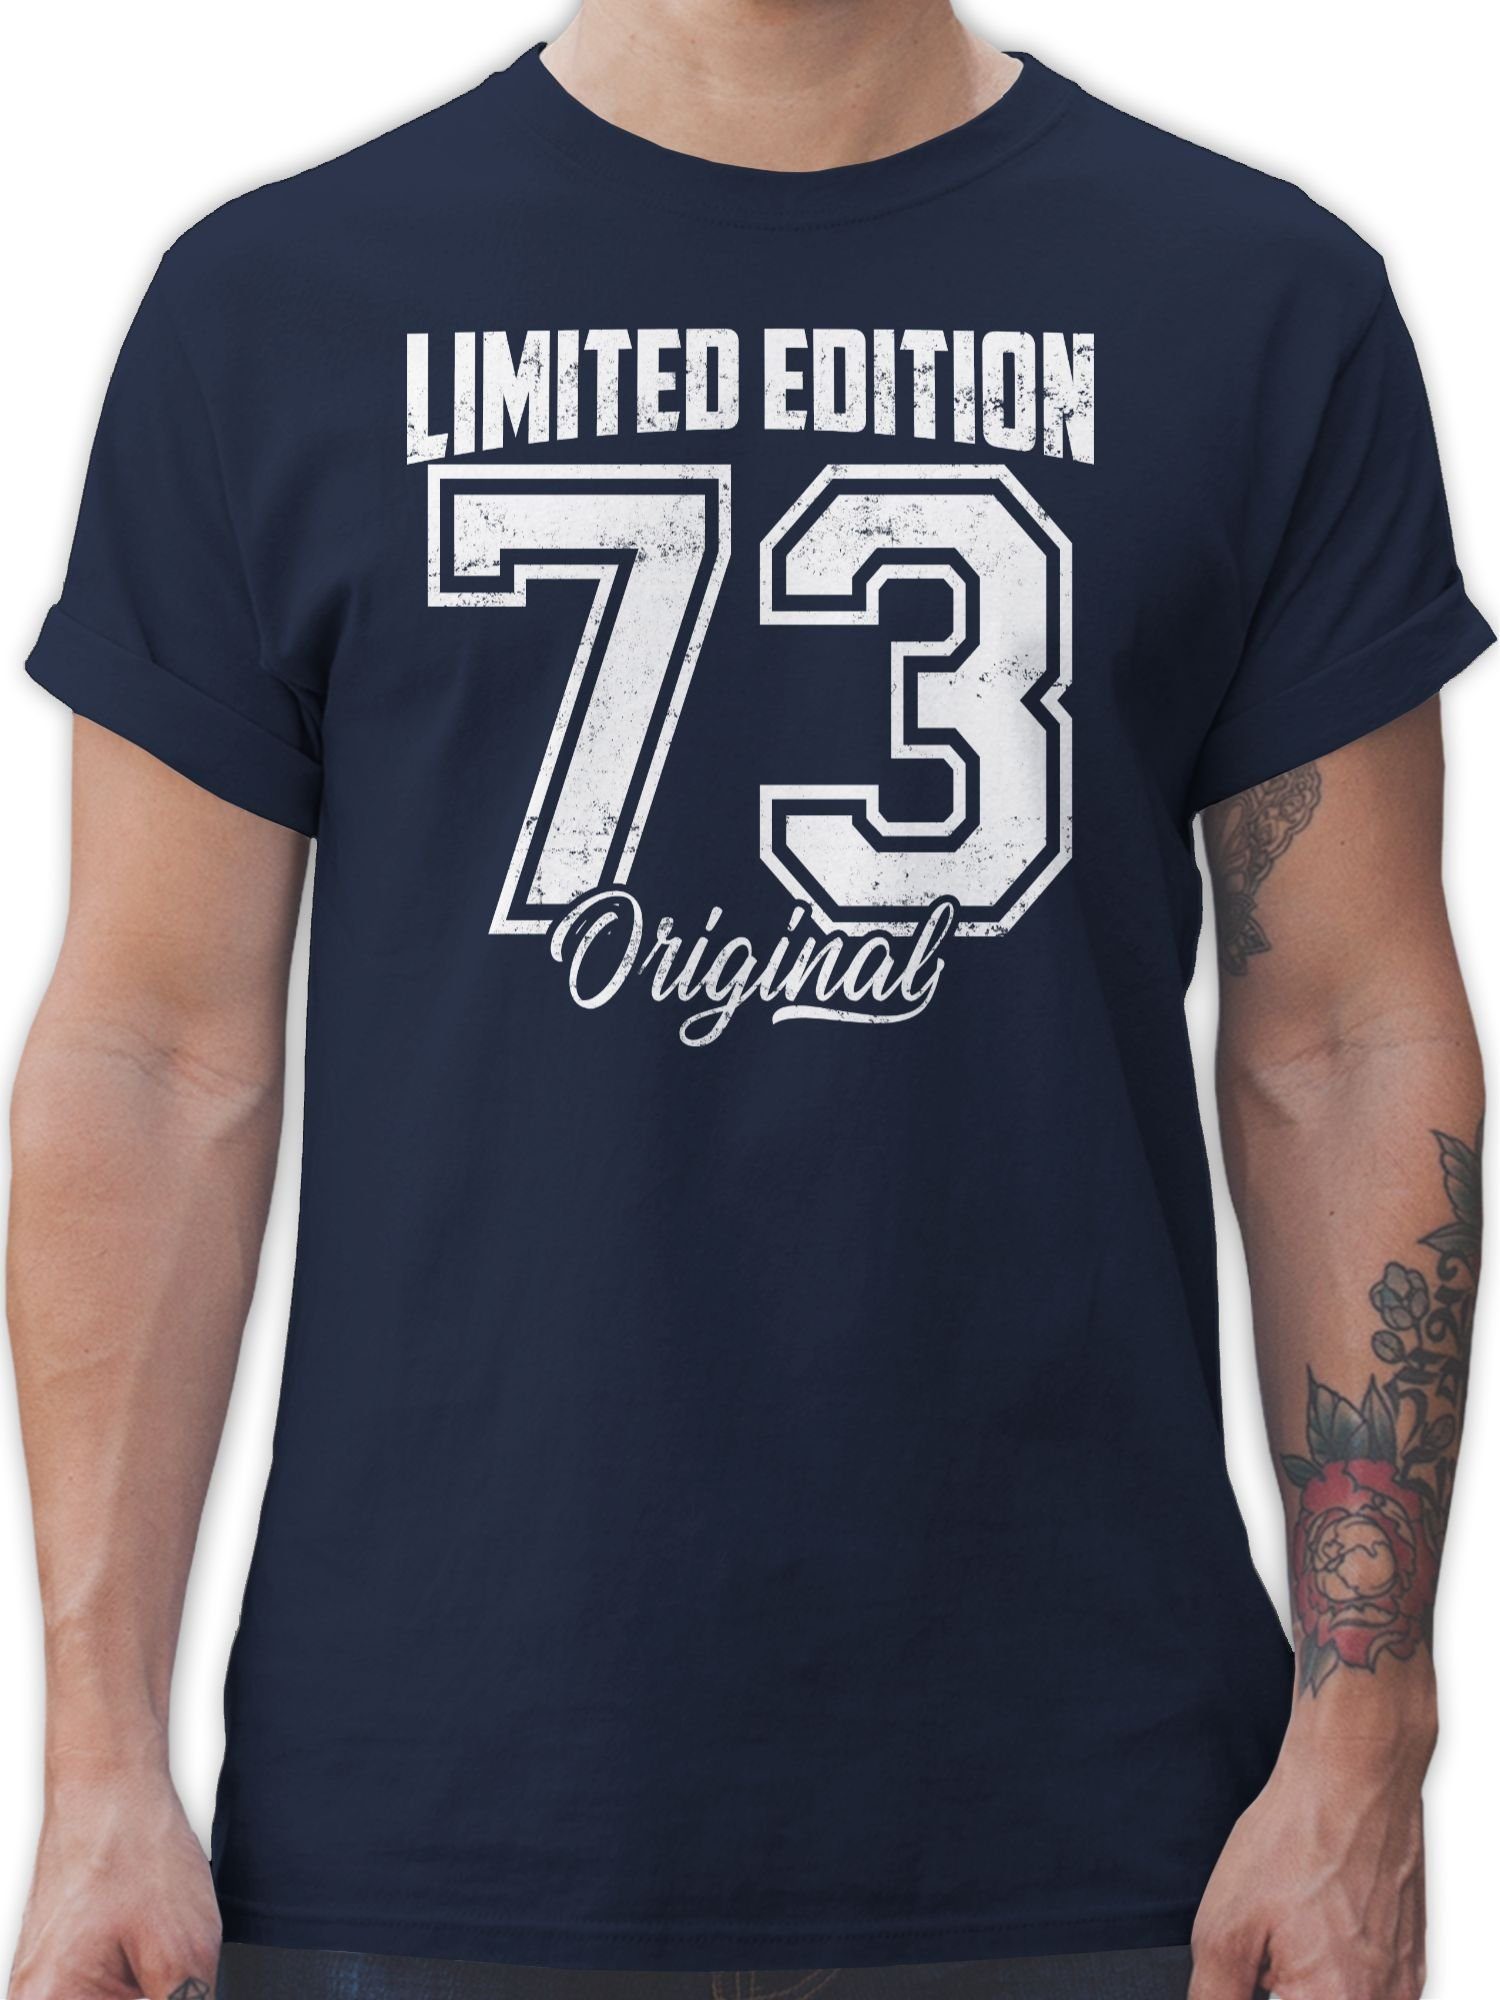 Shirtracer T-Shirt Limited Edition 1973 Original Weiß Vintage Fünfzigster 50. Geburtstag 03 Navy Blau